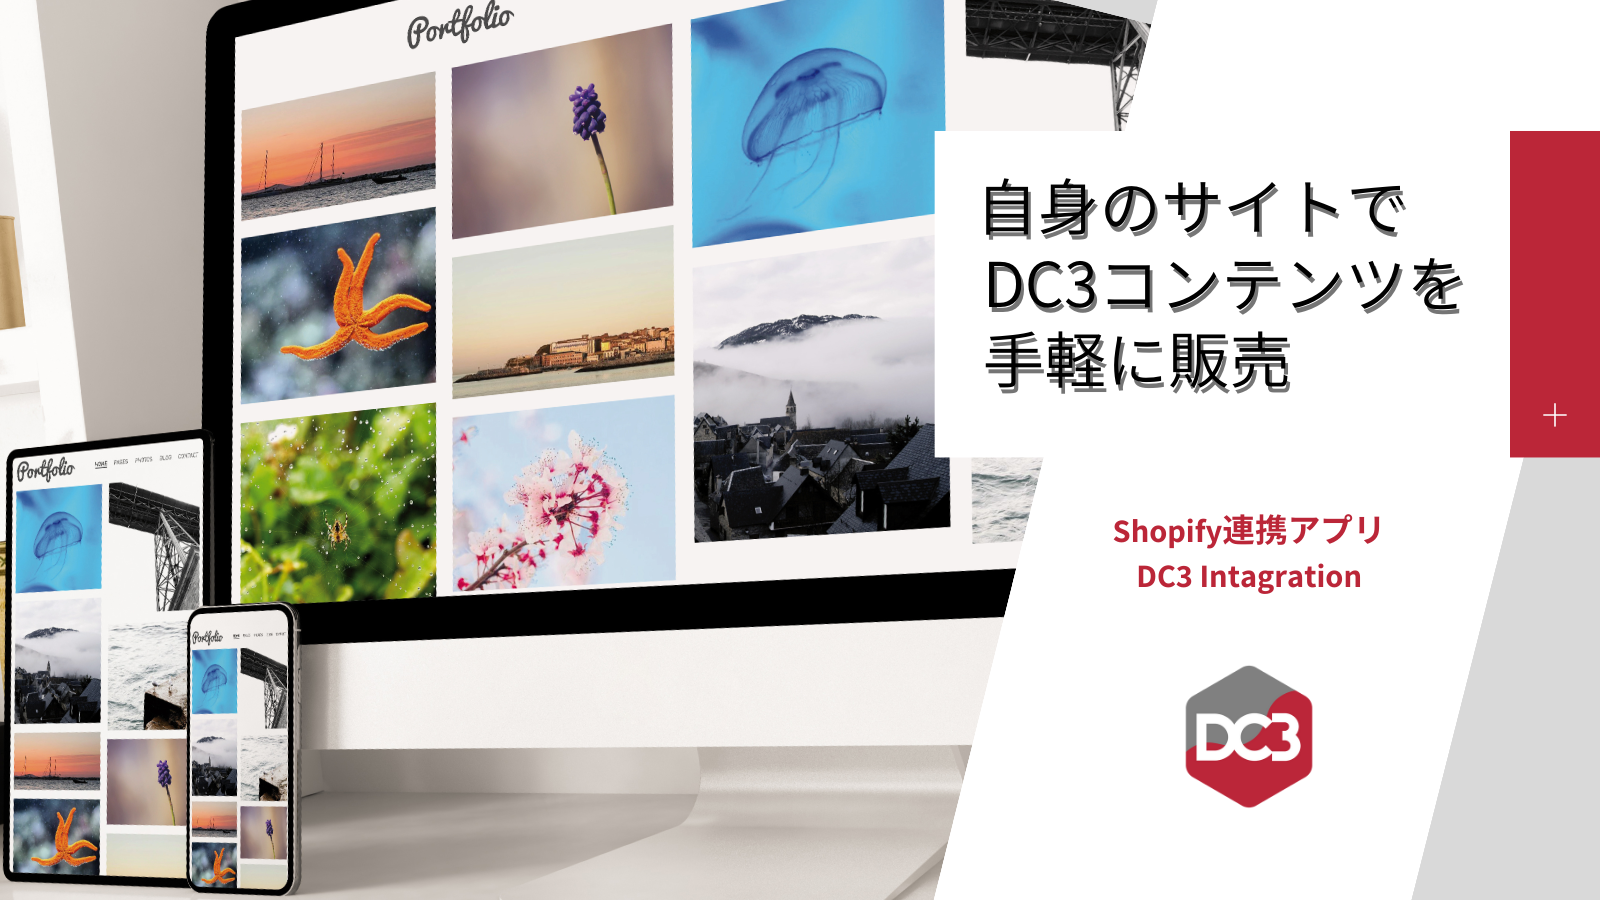 自身のサイトでDC3コンテンツを手軽に販売のスクリーンショット画像